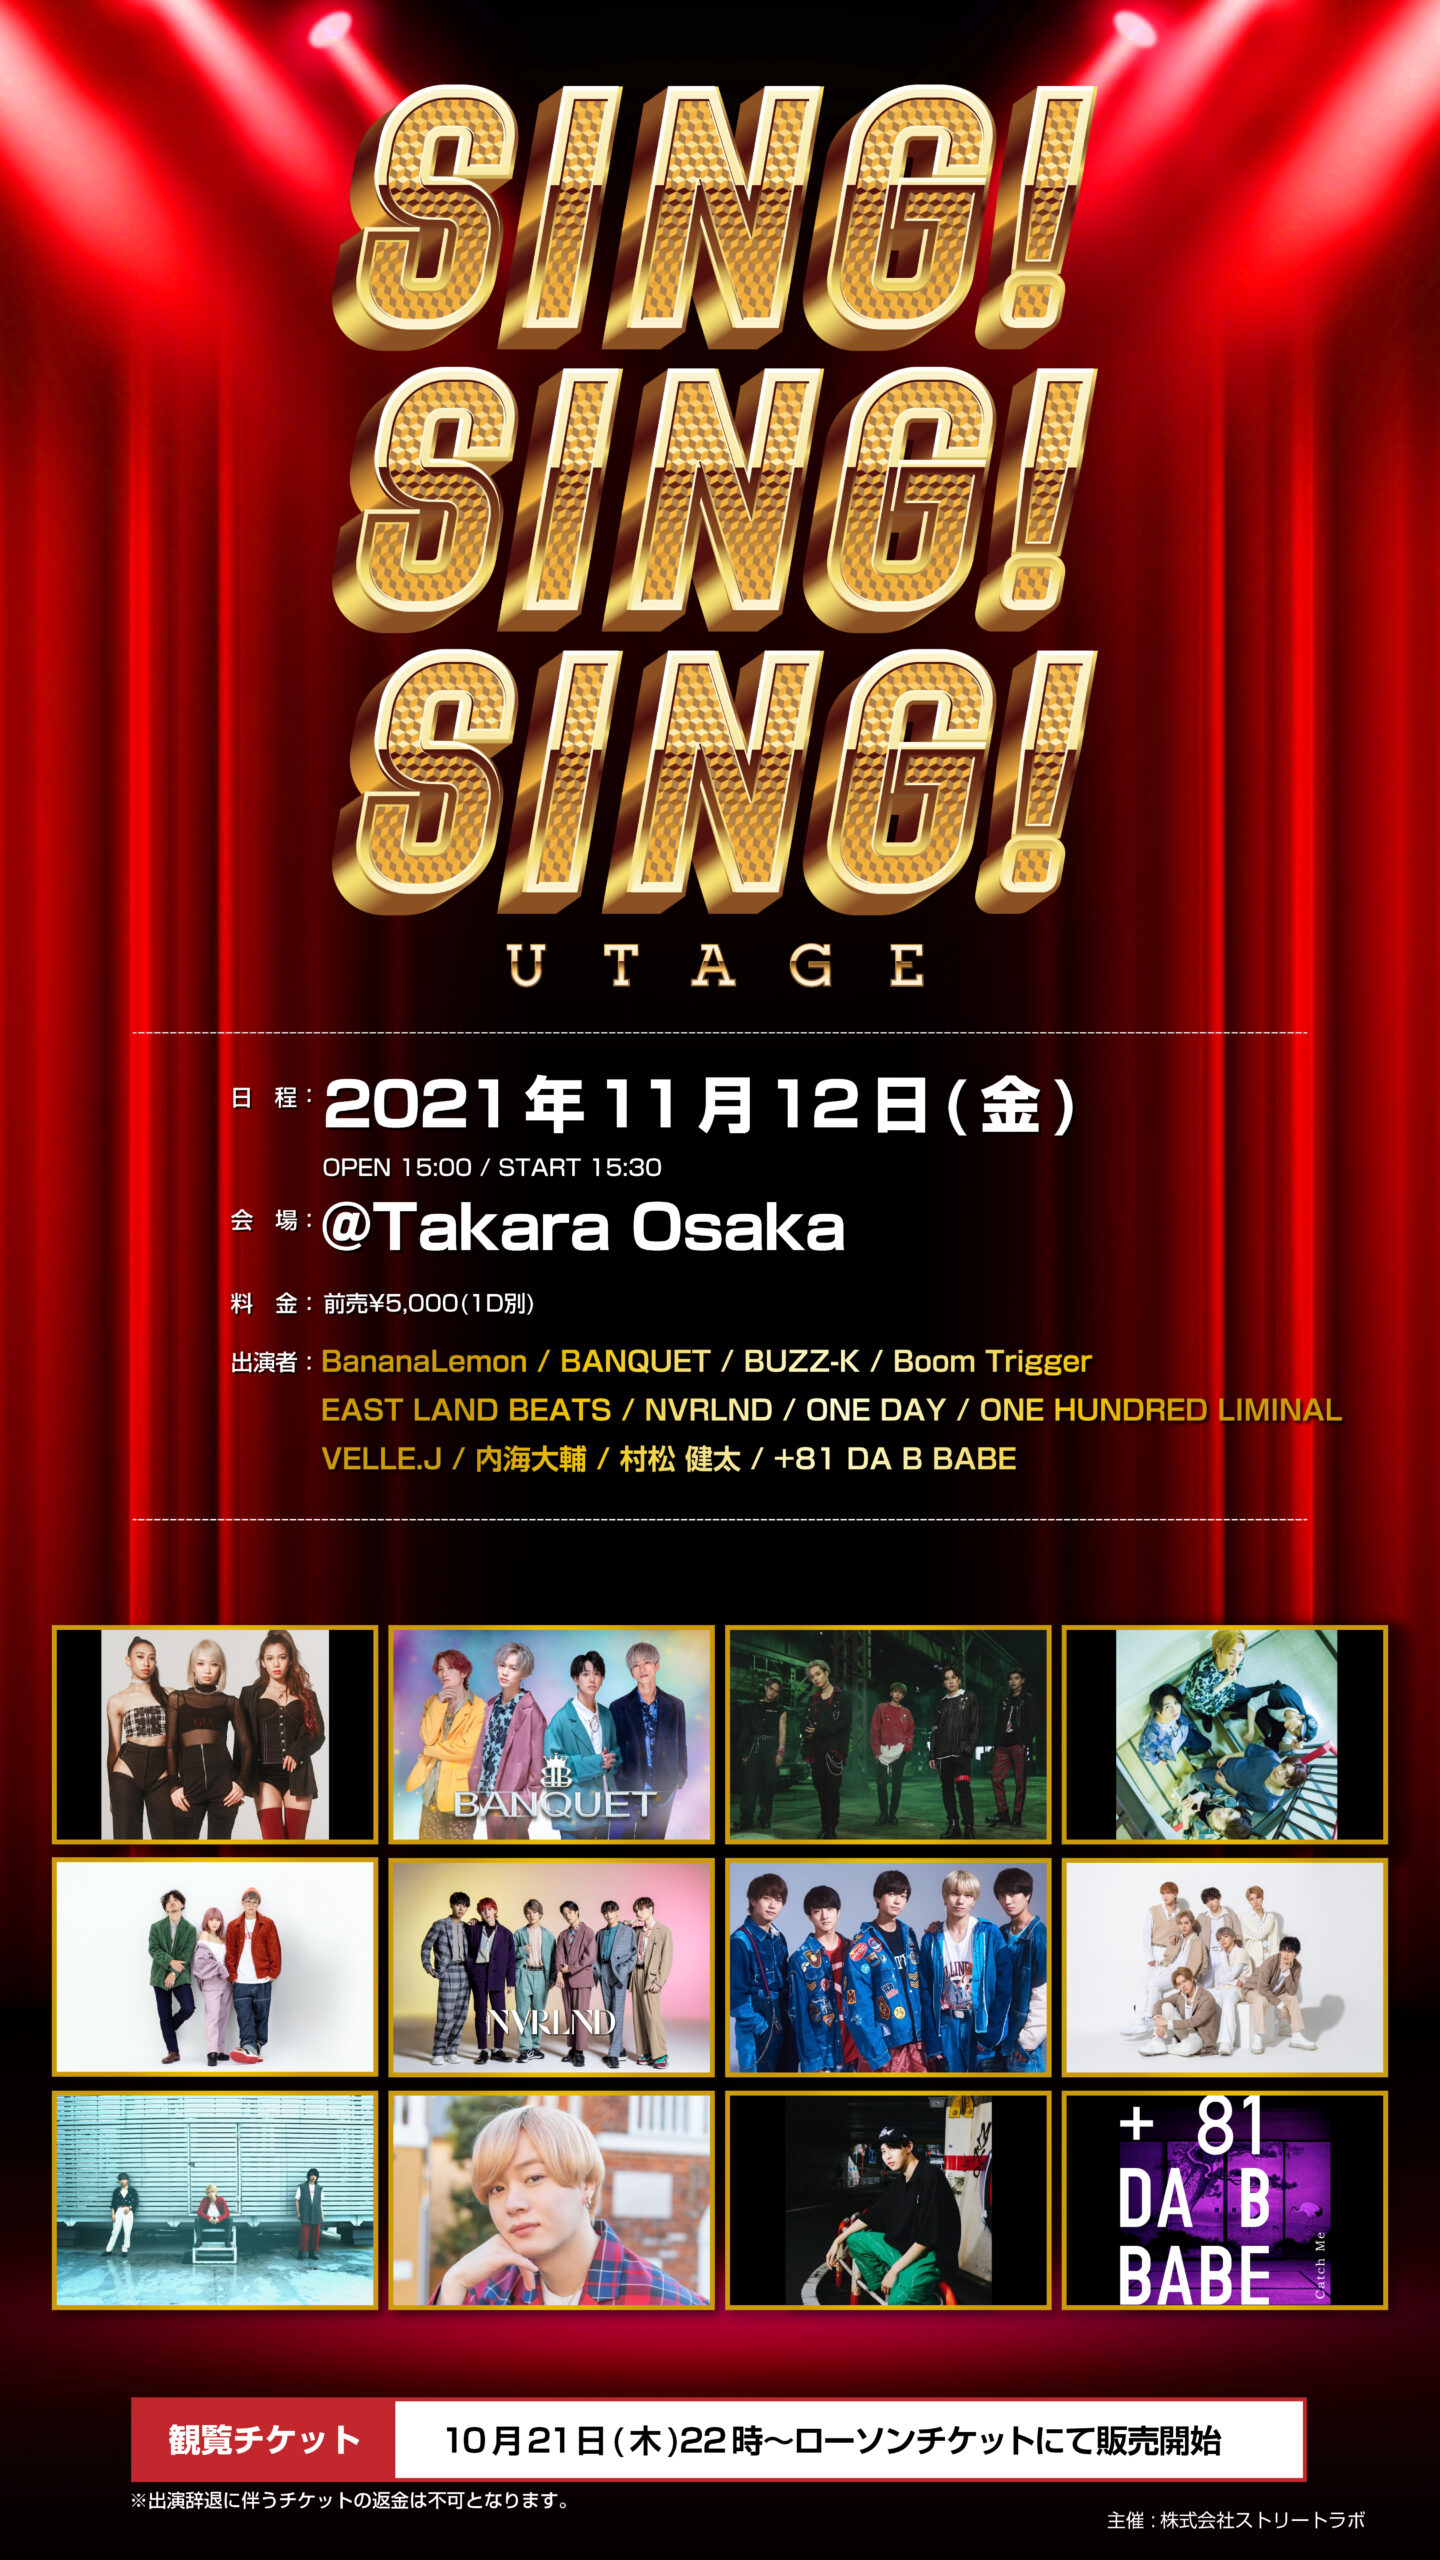 UTAGE SING!SING!SING! in OSAKA @Takara Osaka